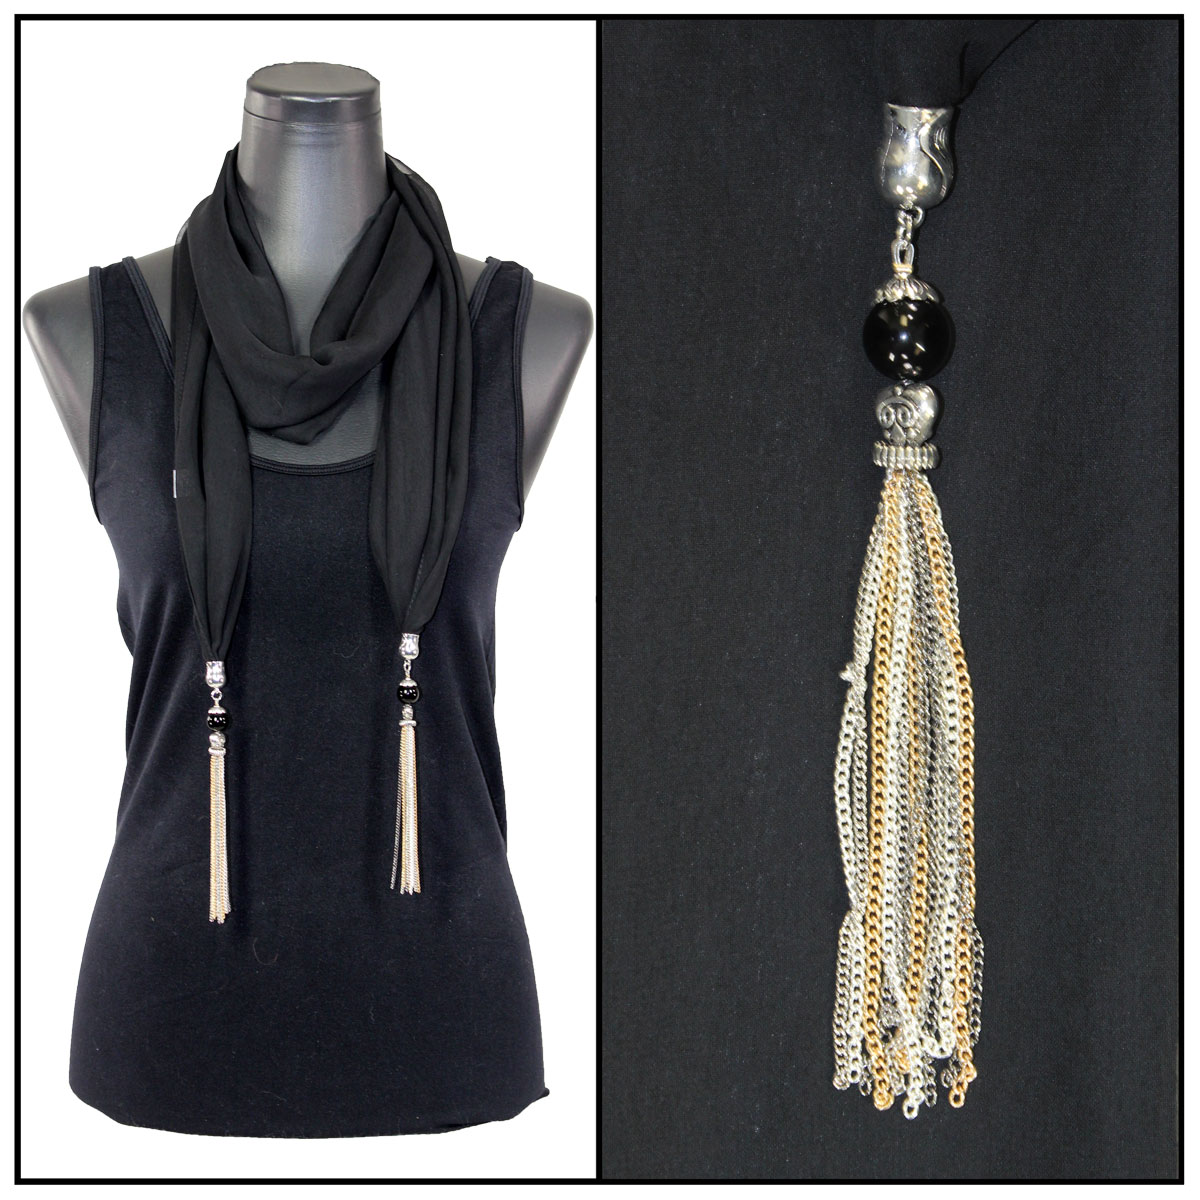 9001 - Tasseled Silky Dress Scarves Solid Sky Blue<br>
Metal Tassels - 